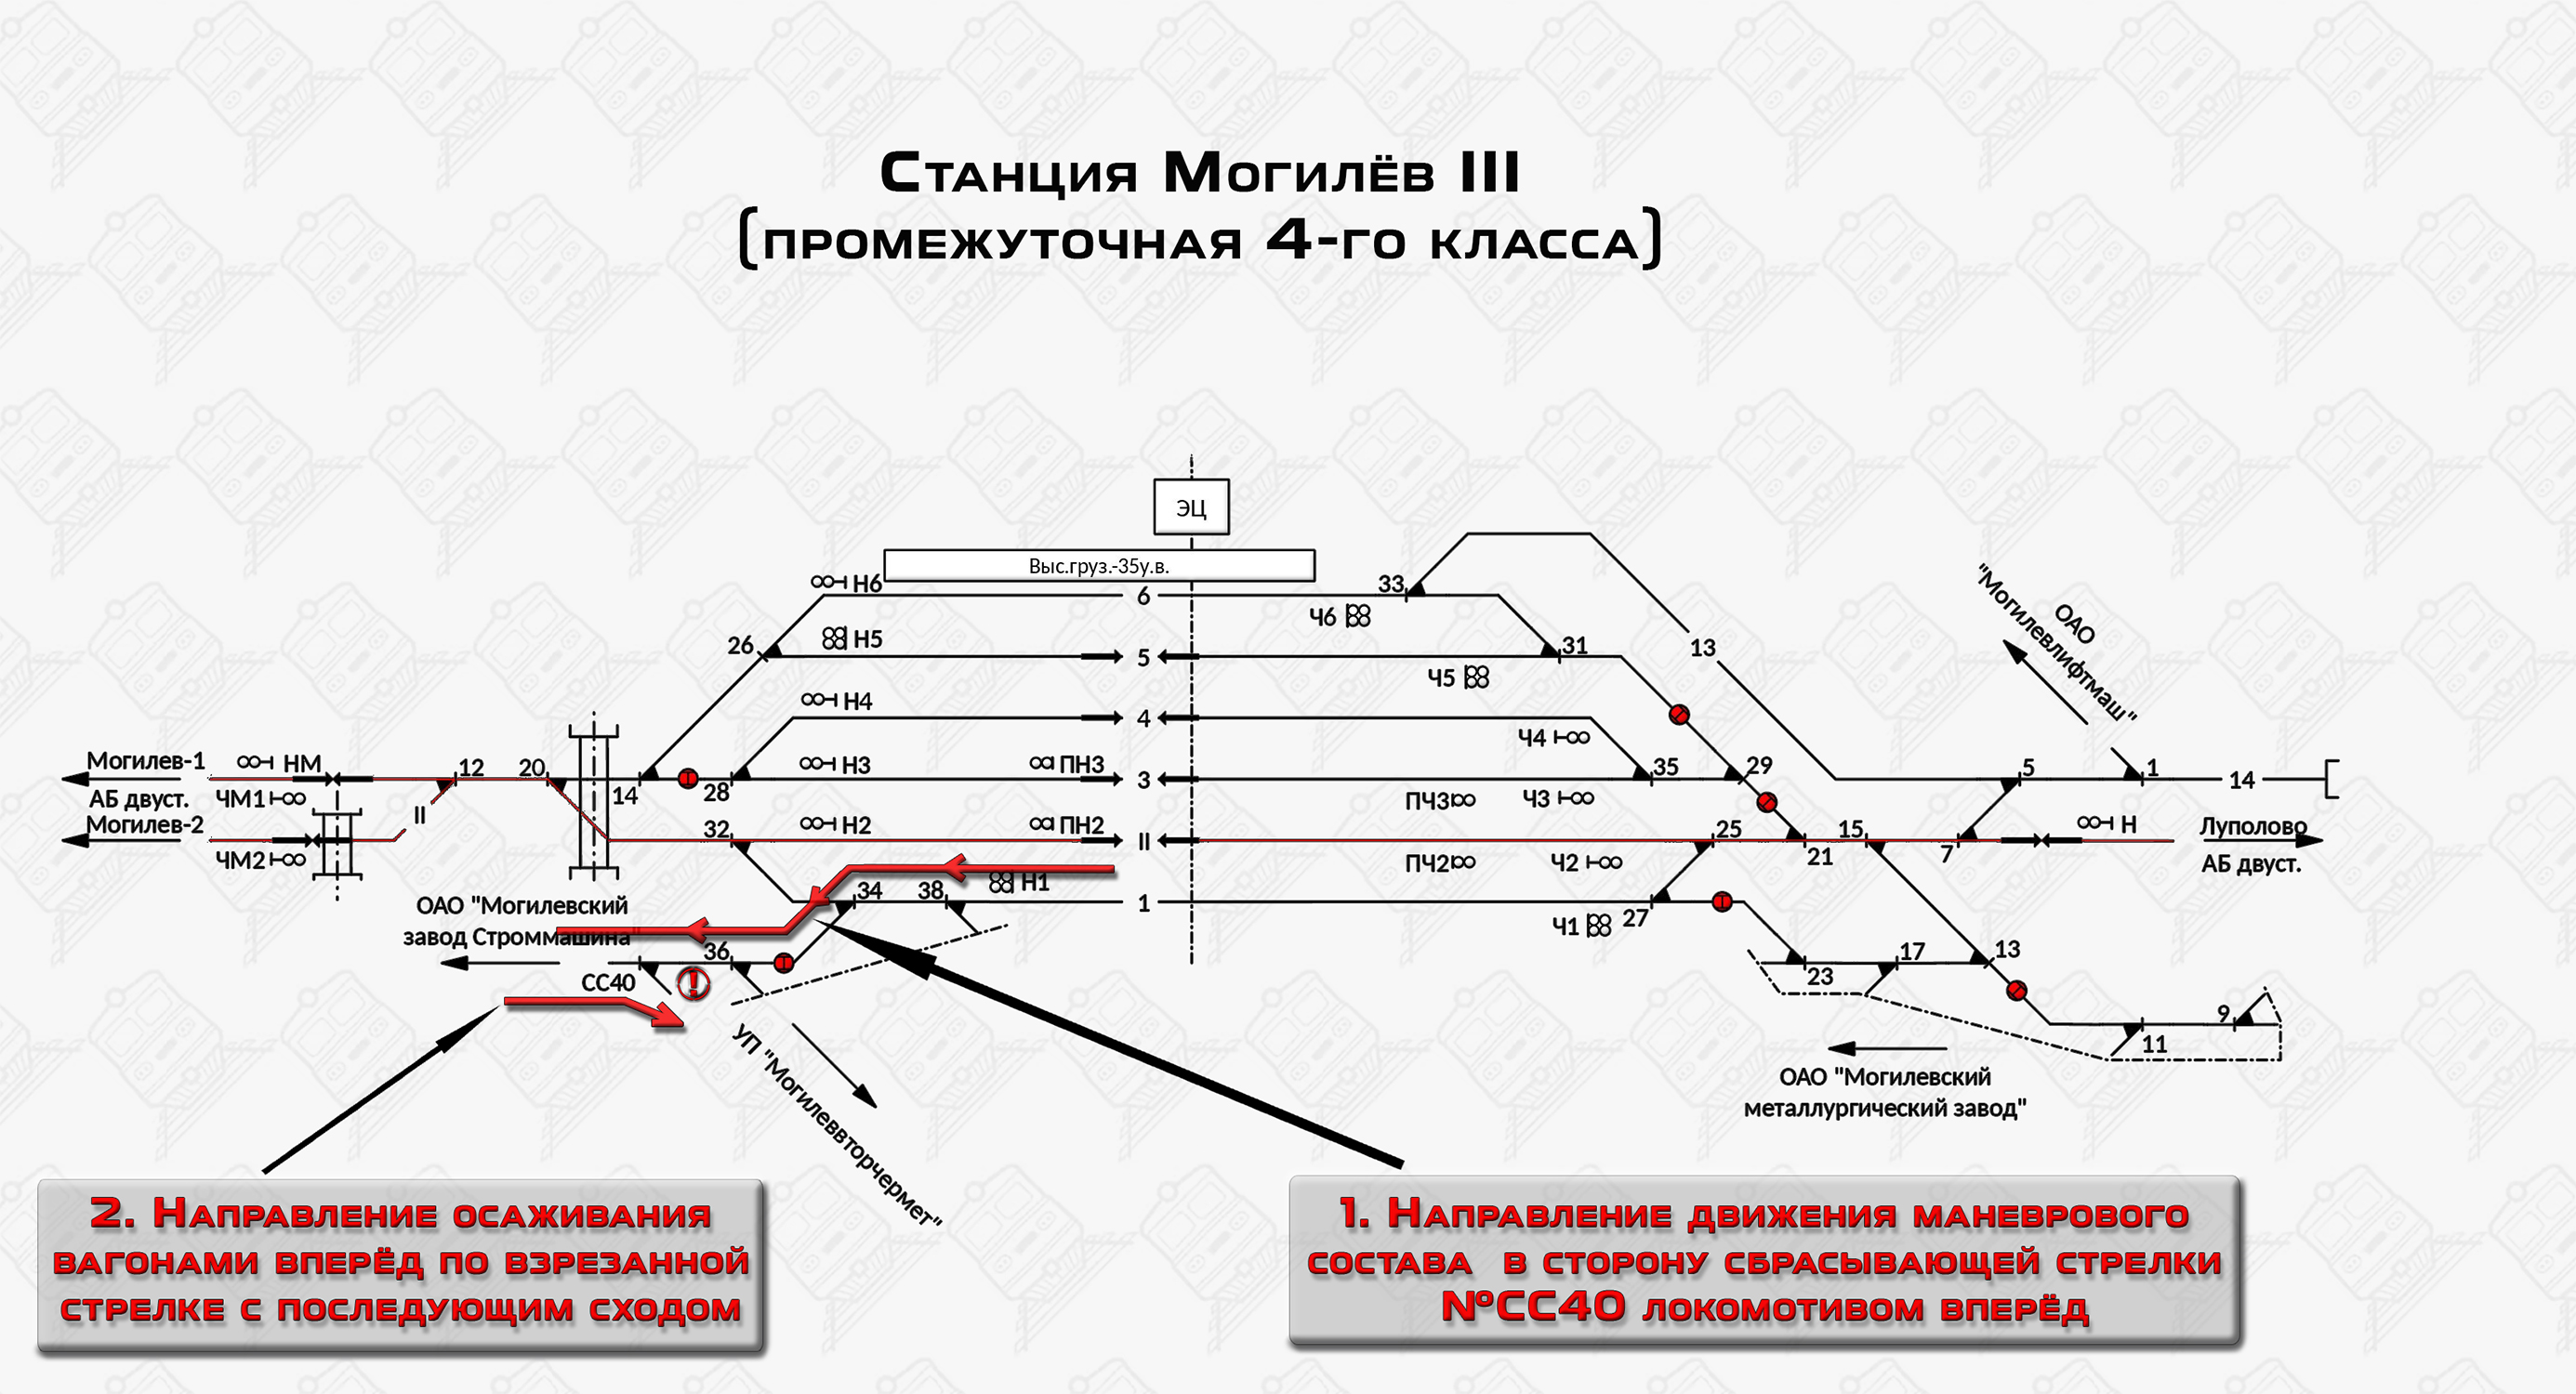 Схема взреза стрелочного перевода и последующего схода на станции Могилёв-3